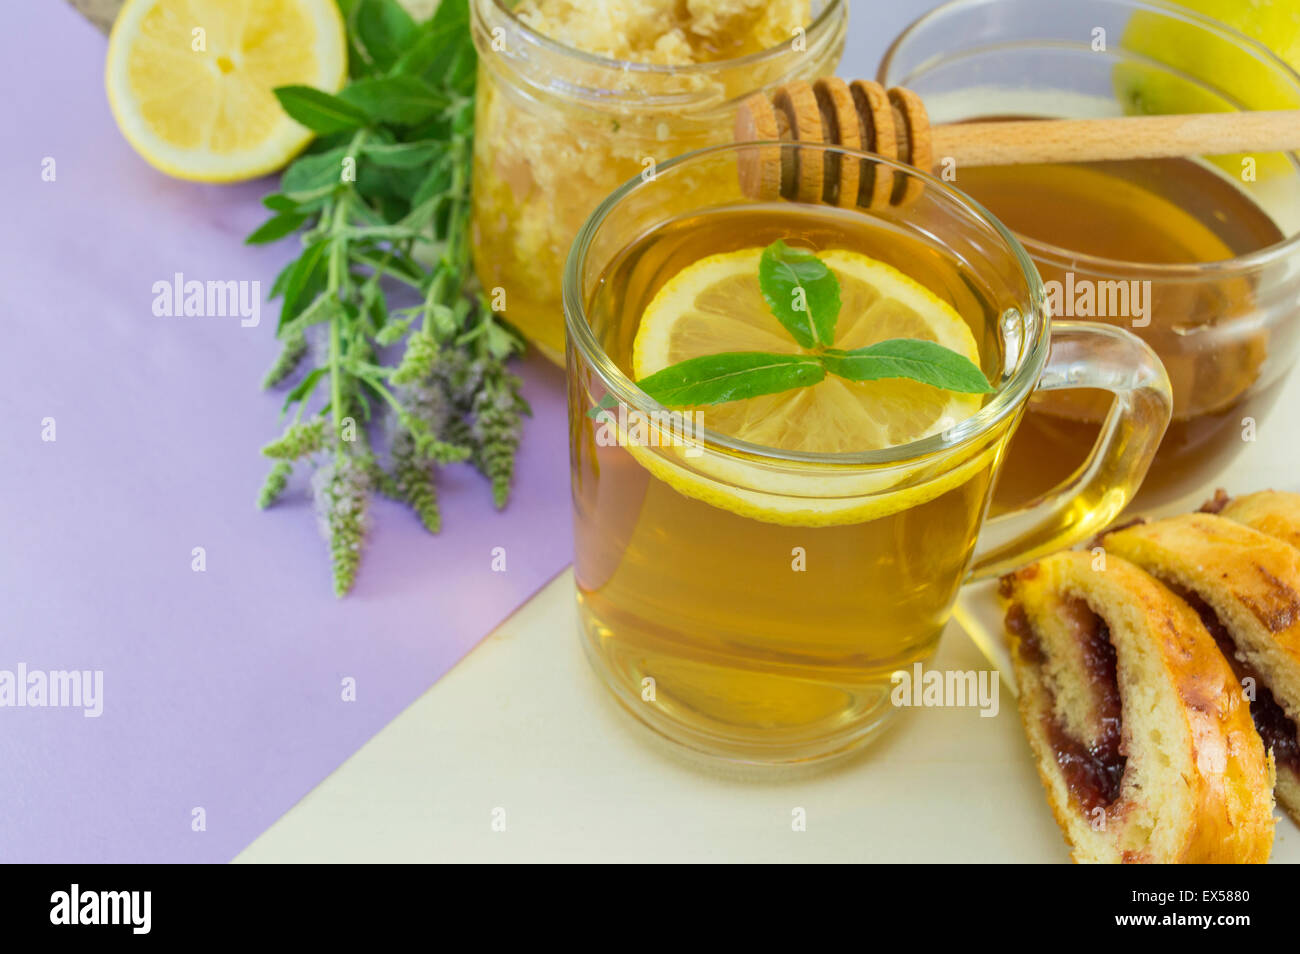 En bonne santé froid thé à la menthe citron sur une table avec des plantes menthe, miel,balancier et dessert Banque D'Images